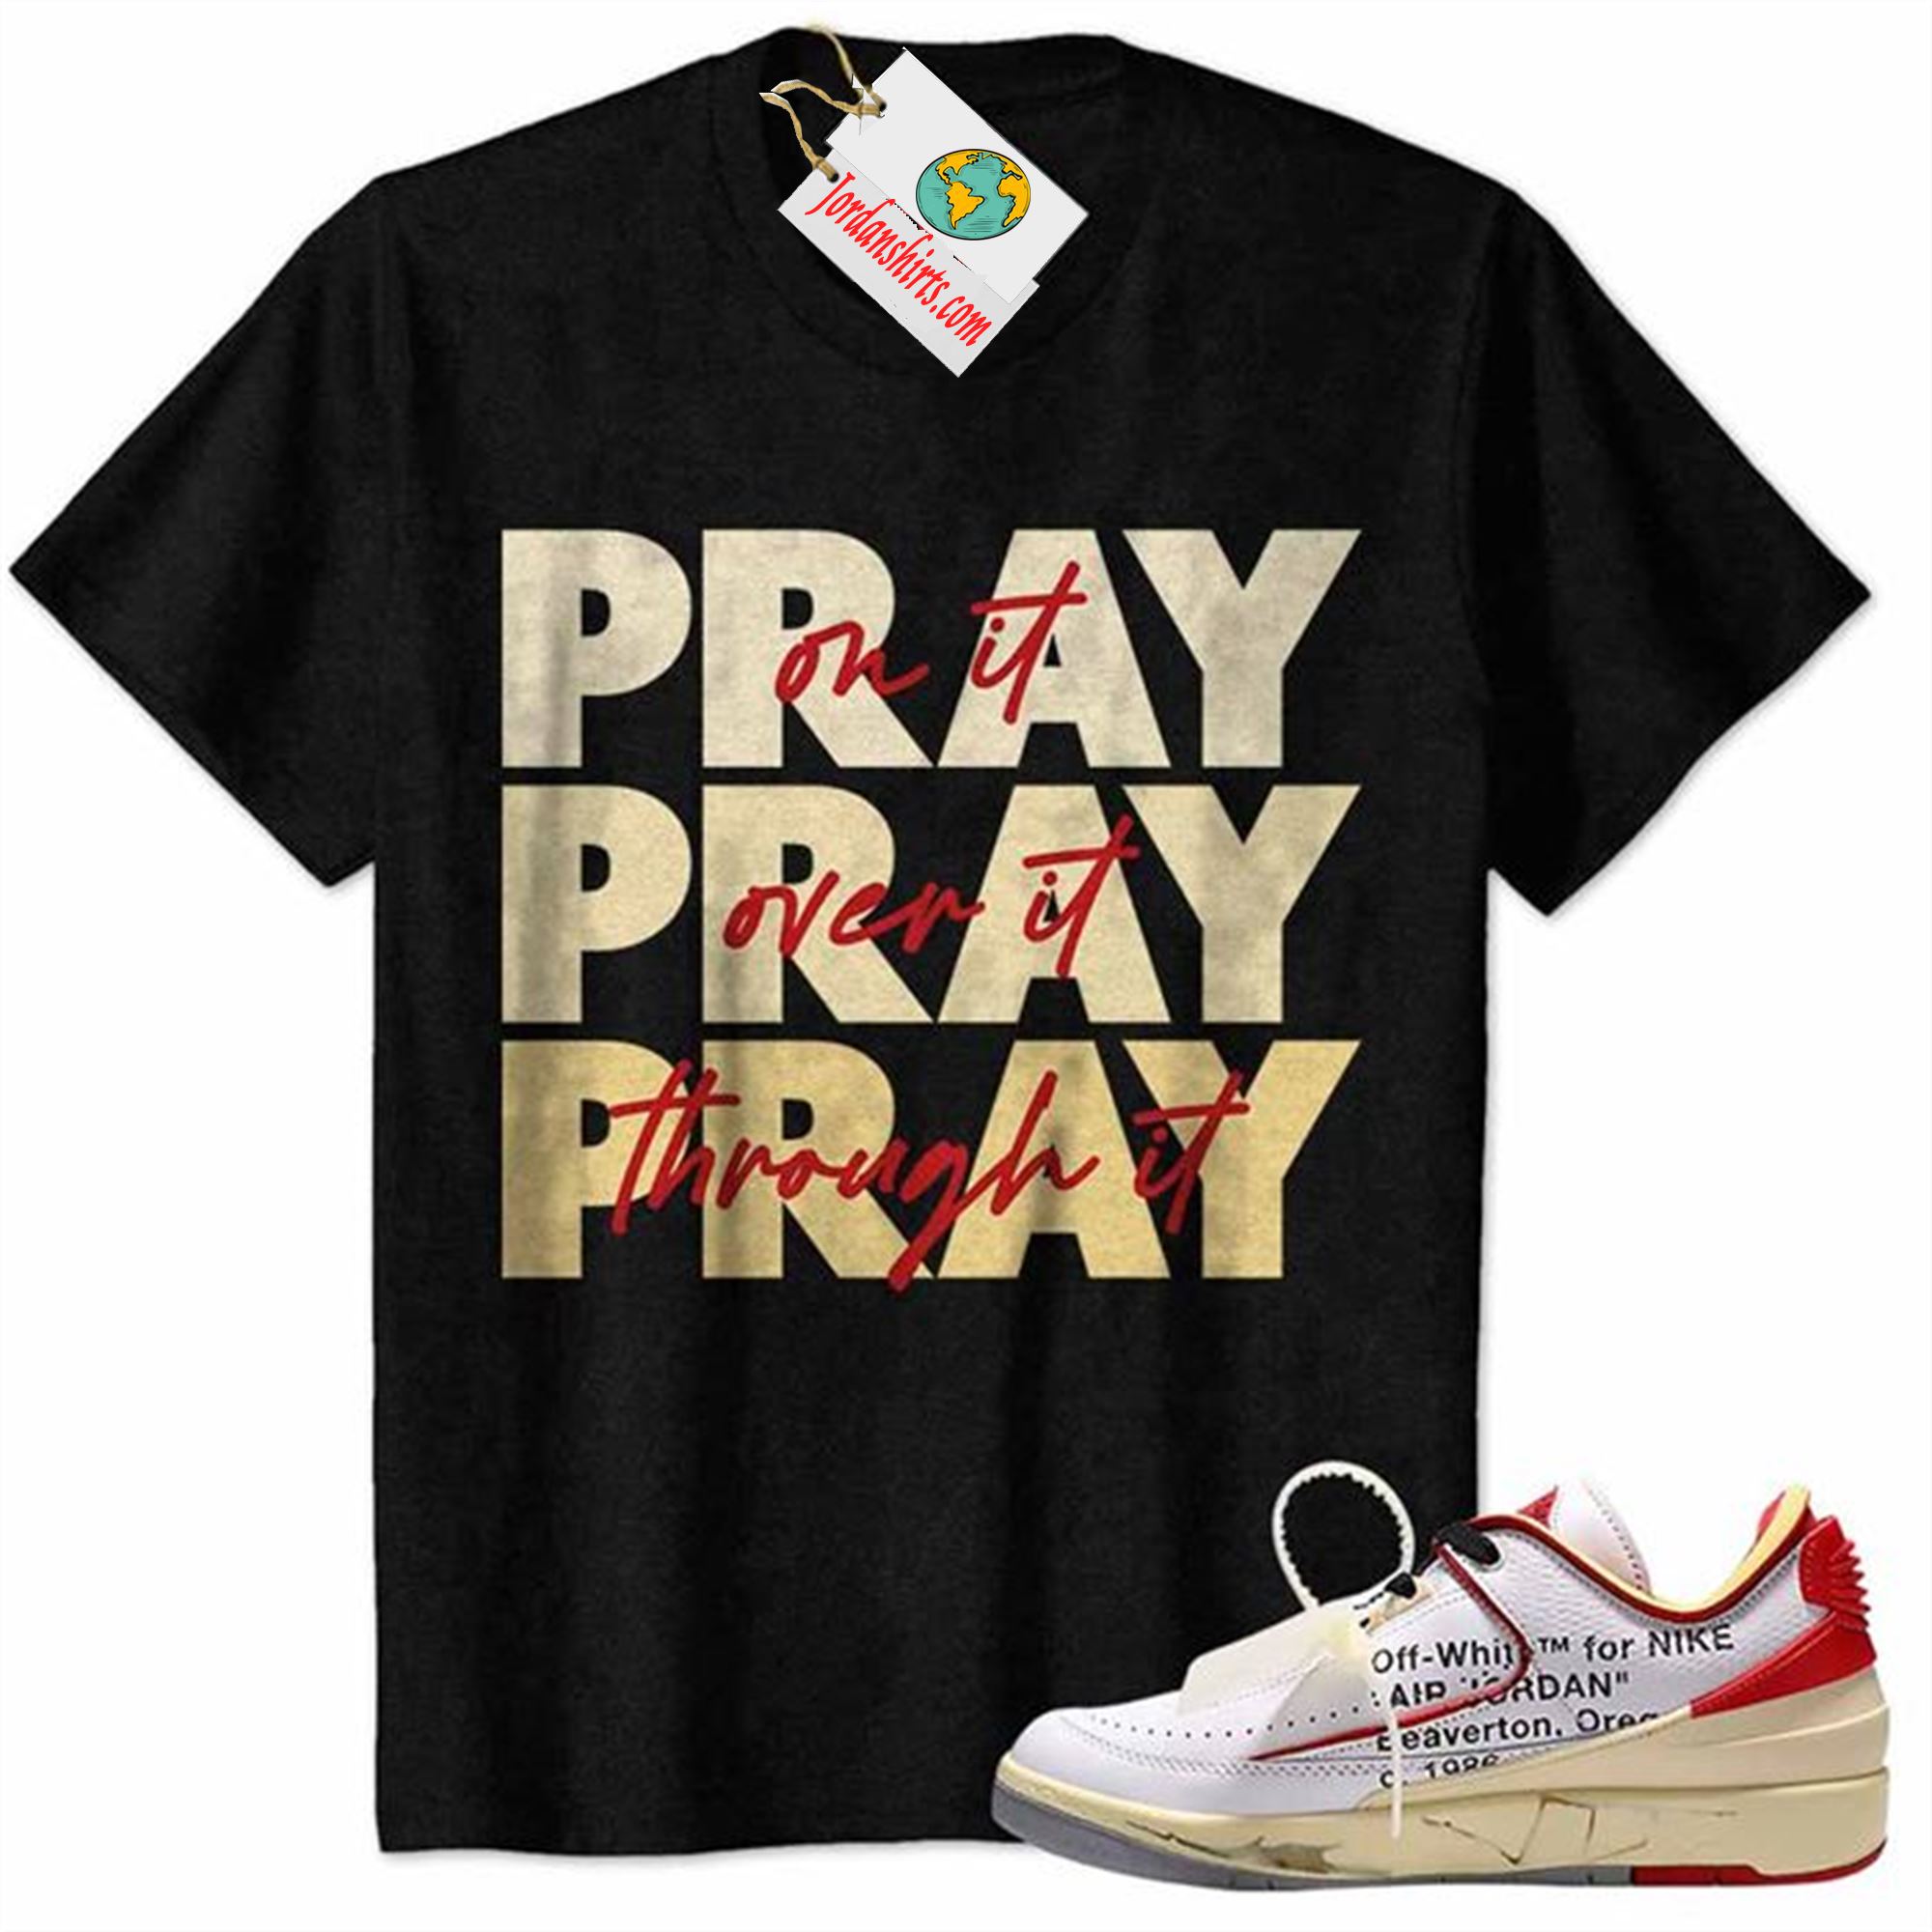 Jordan 2 Shirt, Pray On It Pray Over It Pray Through It Black Air Jordan 2 Low White Red Off-white 2s-trungten-wsfc4 Full Size Up To 5xl